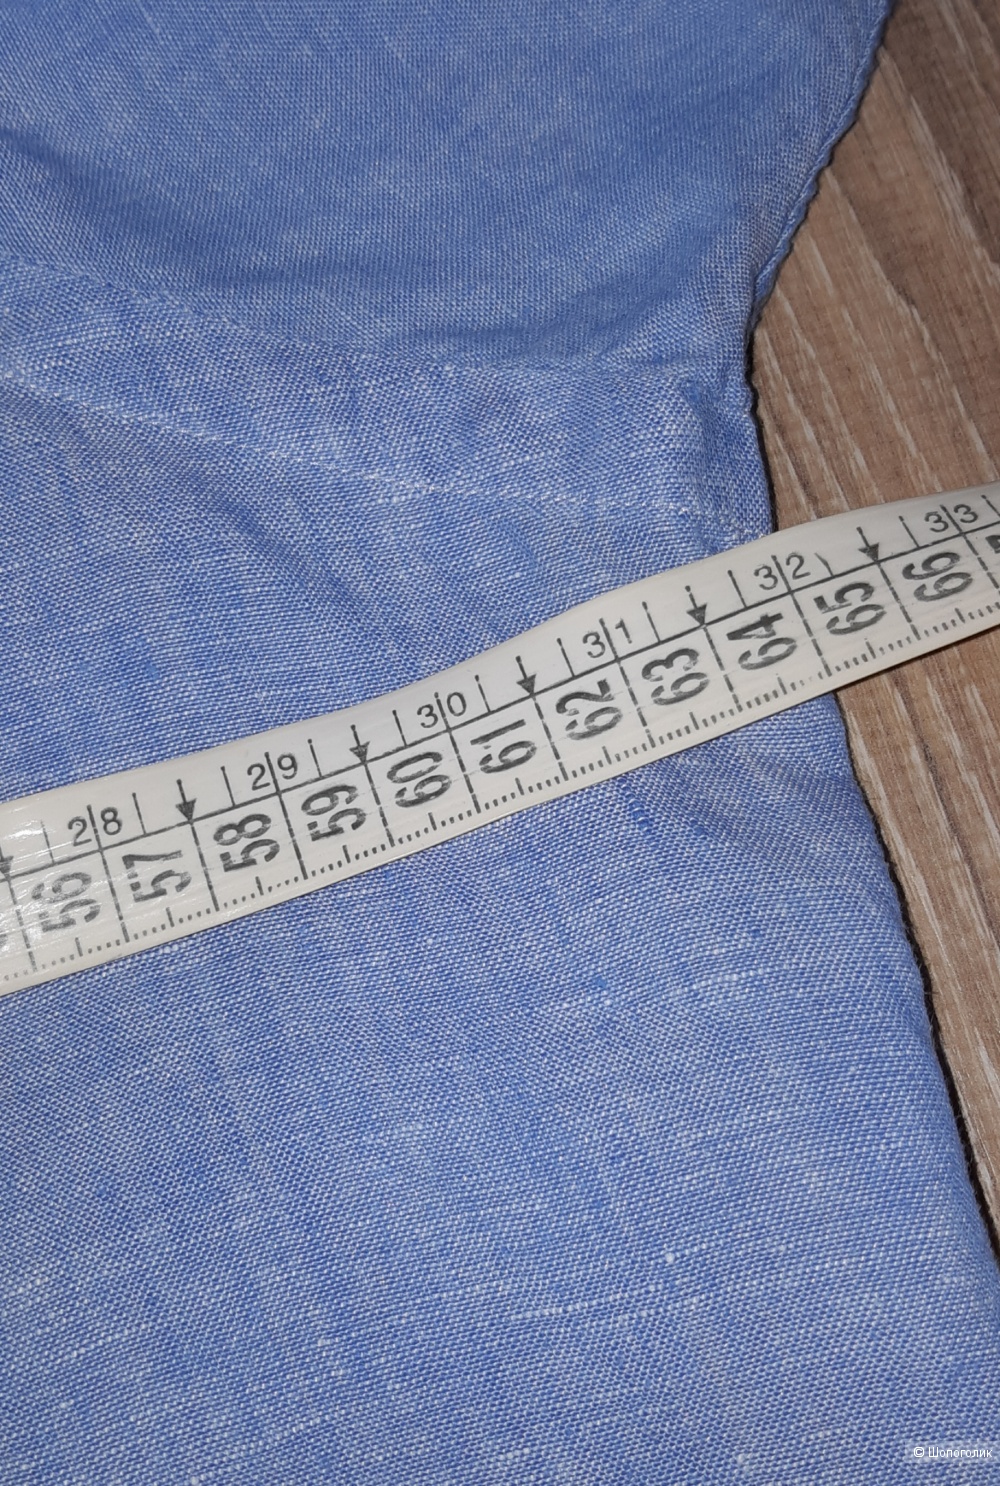 Рубашка мужская льняная polo ralph lauren, размер xl